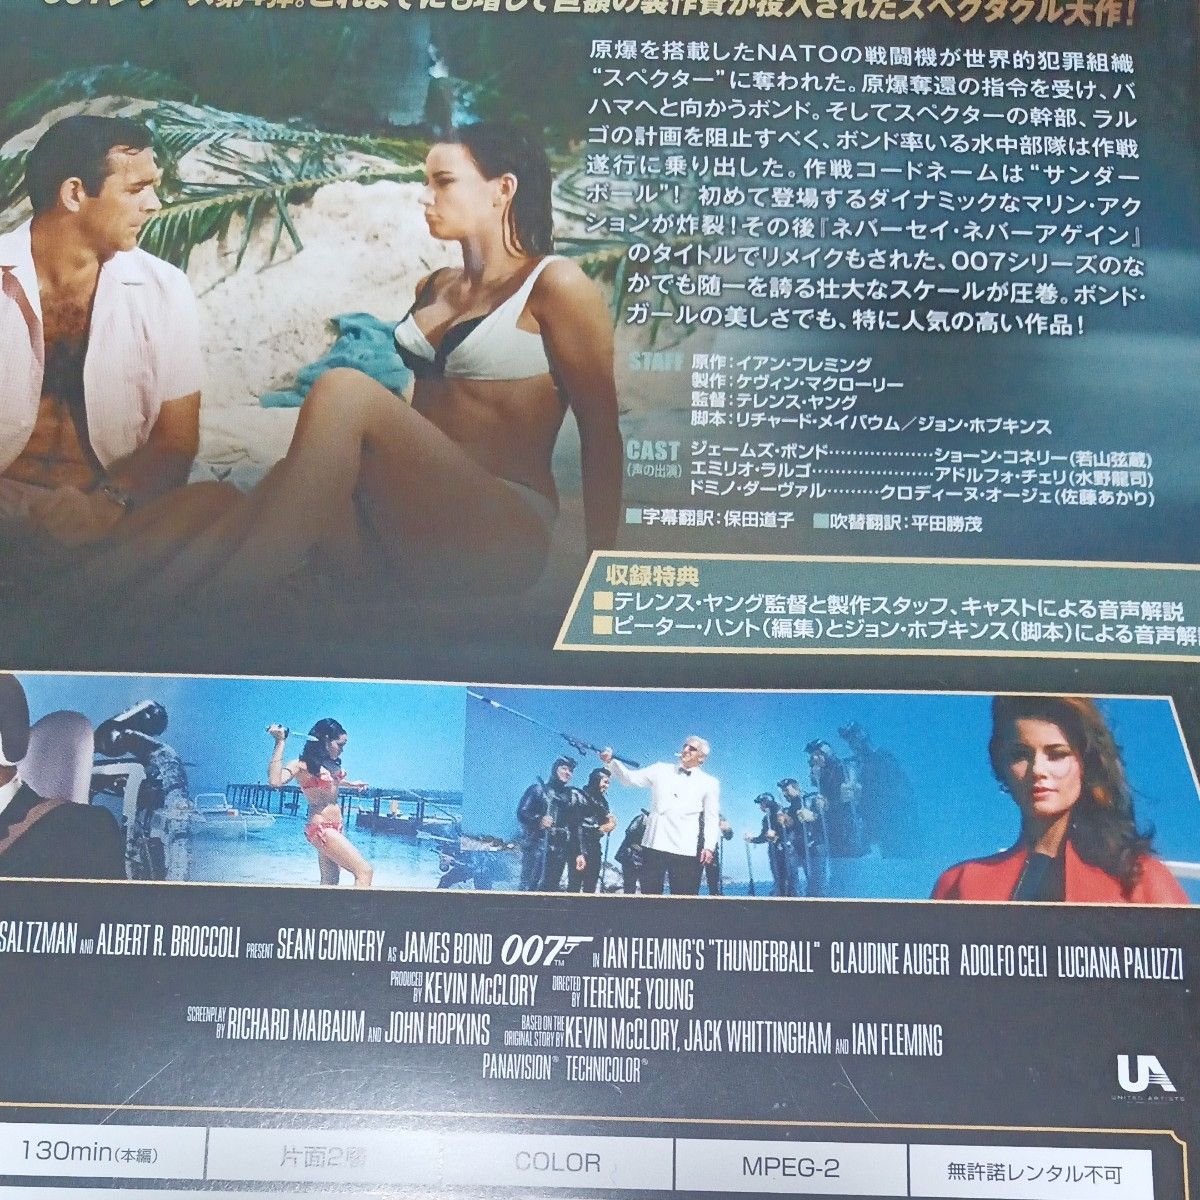  007サンダーボール作戦洋画DVD 